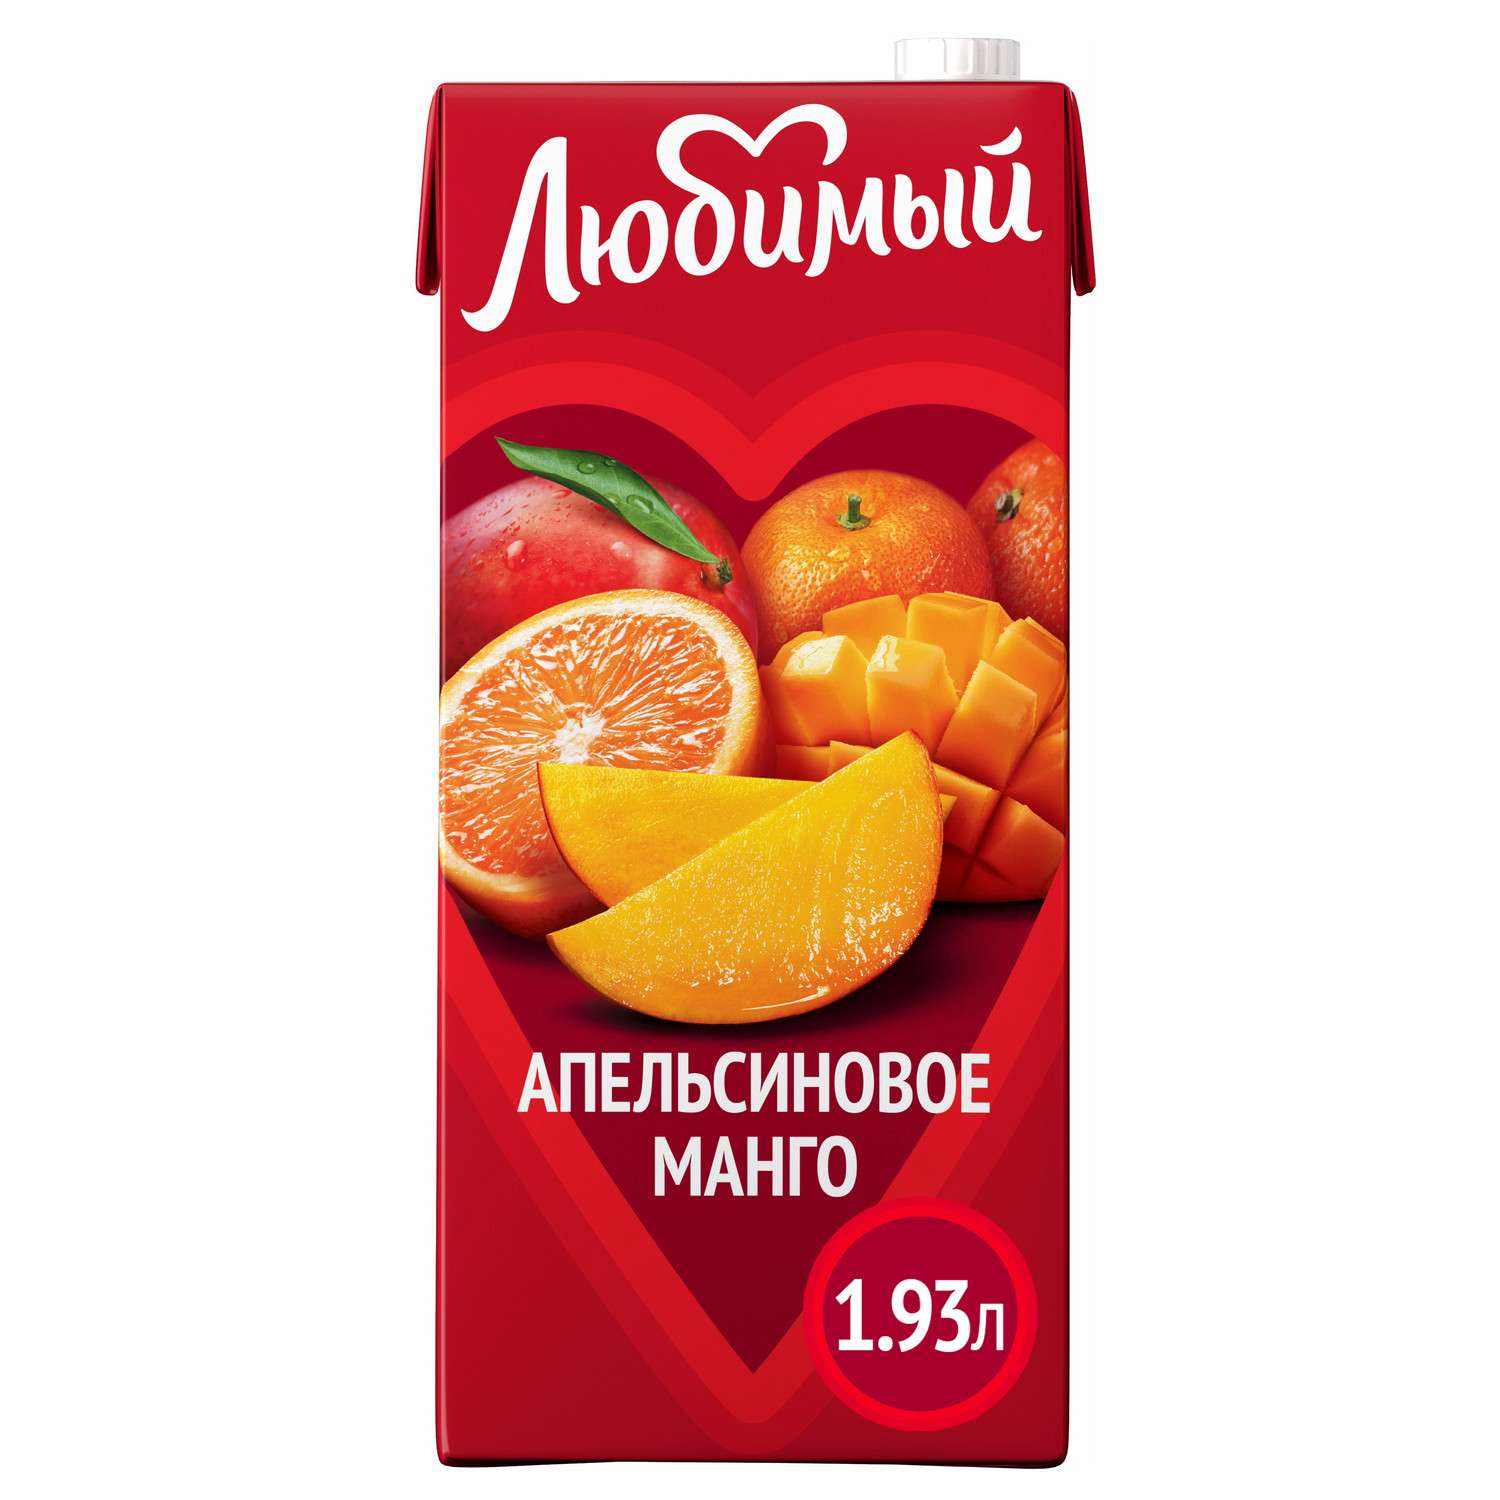 Напиток сокосодержащий Любимый со вкусом апельсинов манго и мандаринов с мякотью 1.93л - фото 1